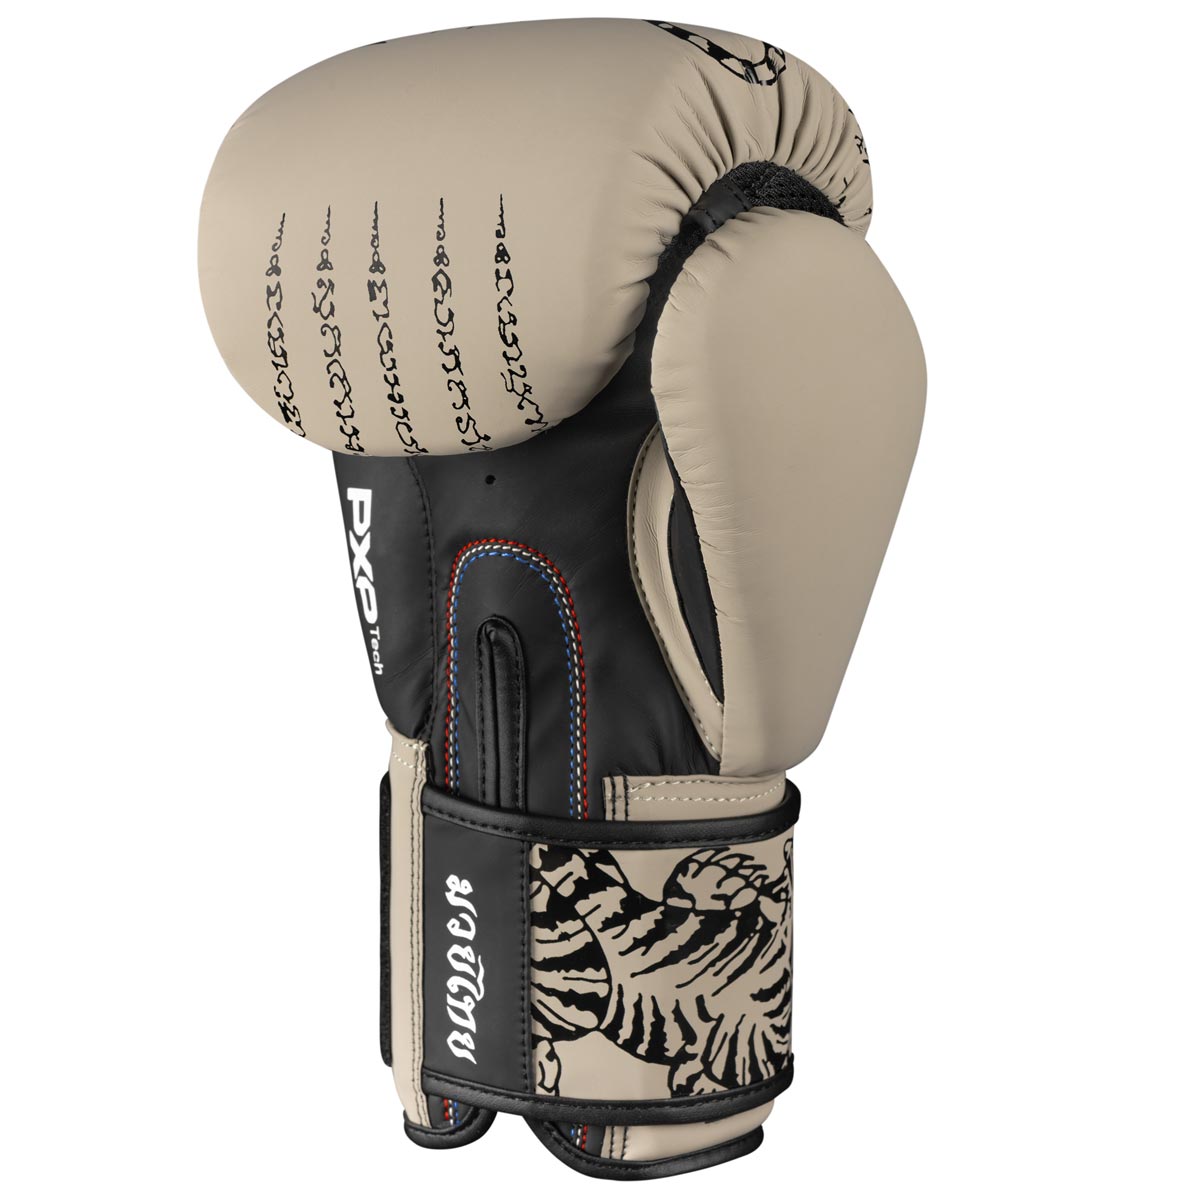 Die Phantom Muay Thai Boxhandschuhe in verfügen über einen Mesh Einsatz an der Handinnenfläche für eine optimale Belüftung beim Training. Farbe Sand Beige. 